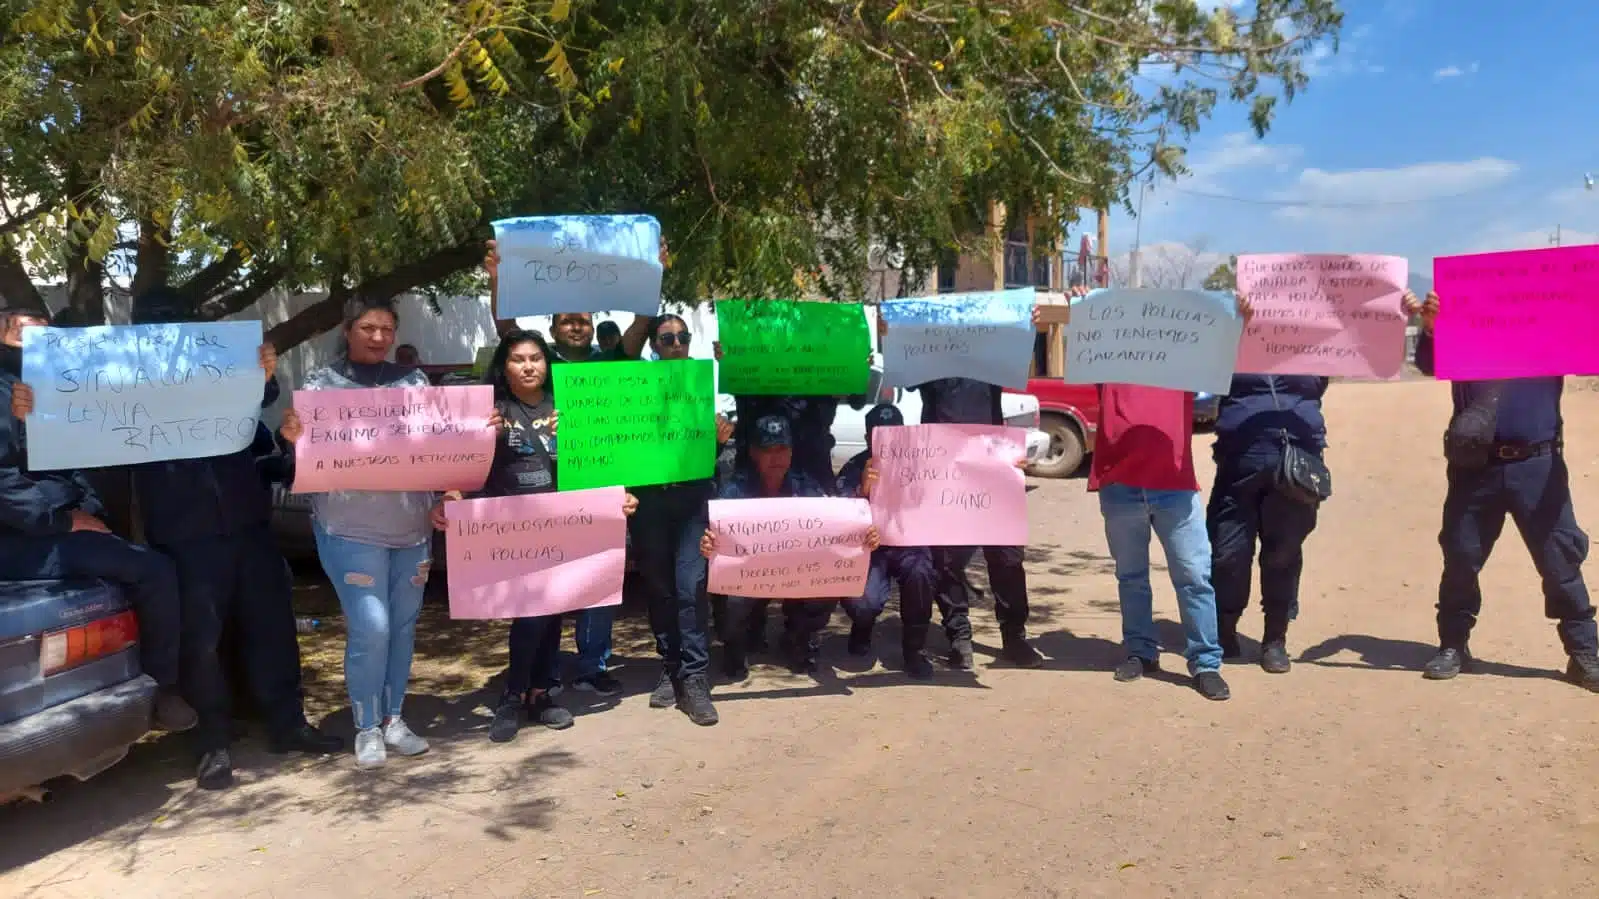 Letalidad en hijos de jornaleros indígenas de Chihuahua es mayor a la de otros estados Semujeres